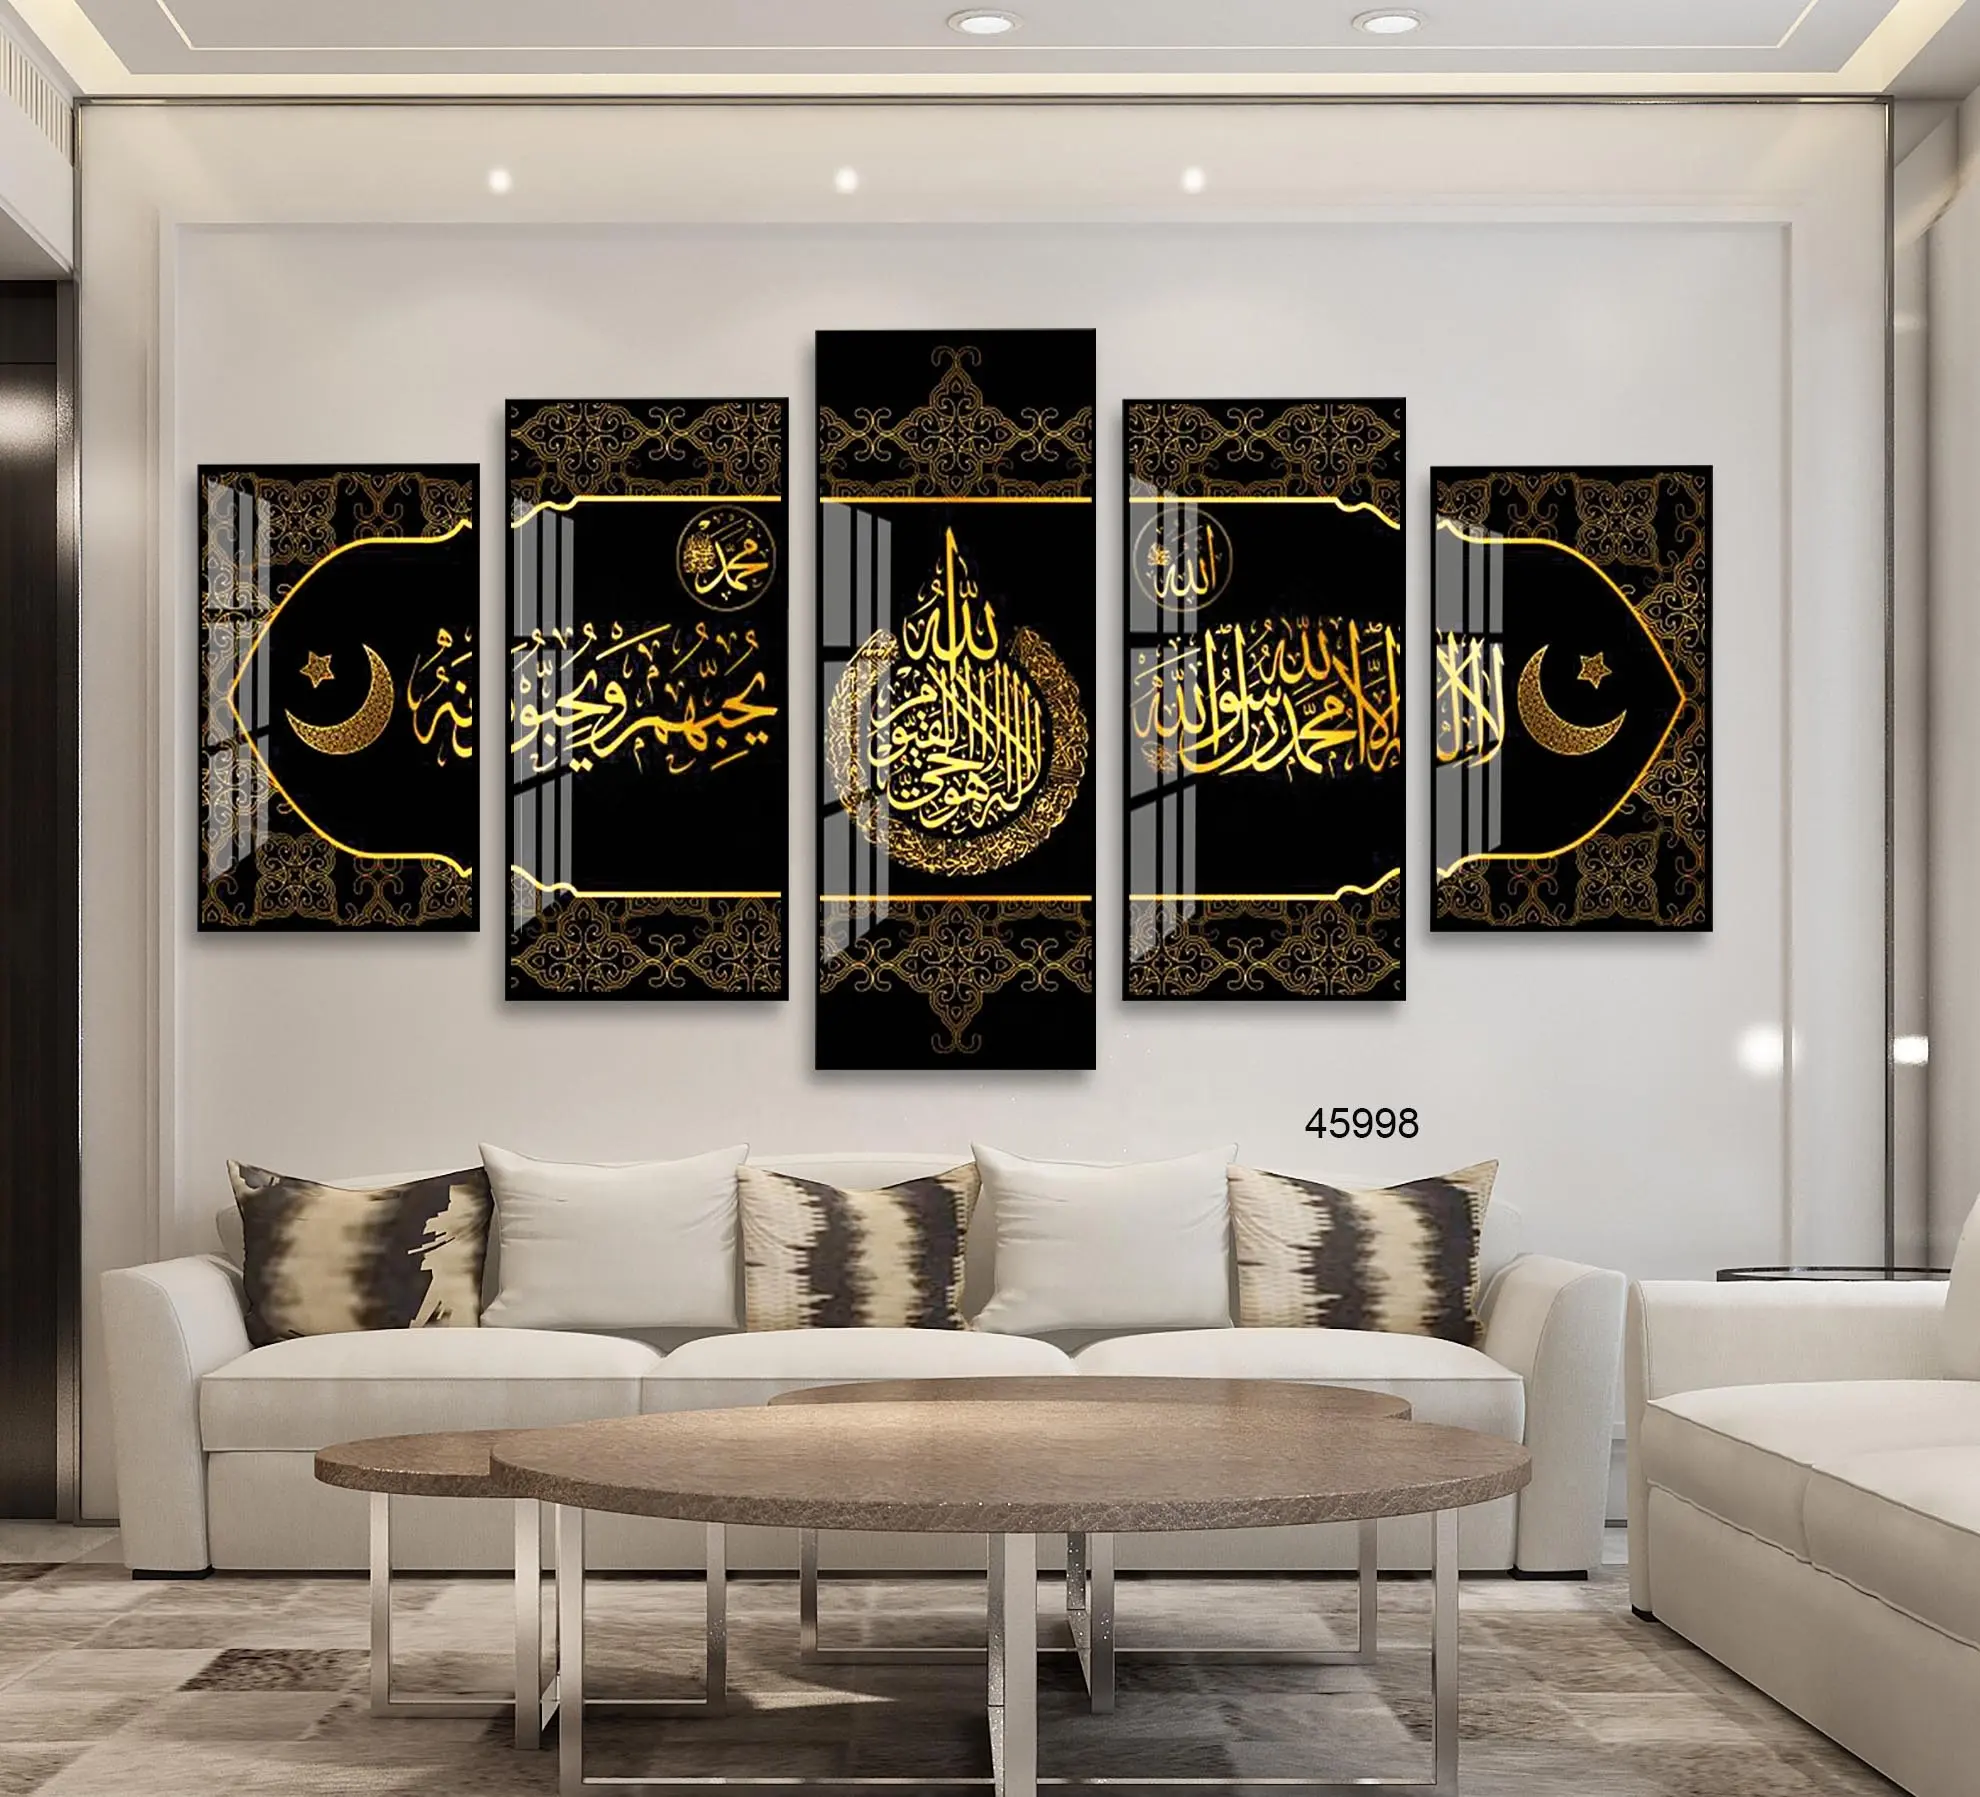 5 פנל אסלאמי קיר אמנות האסלאמי קליגרפיה מודפס קיר אמנות המוסלמי האיסלאם קריסטל פורצלן ציור